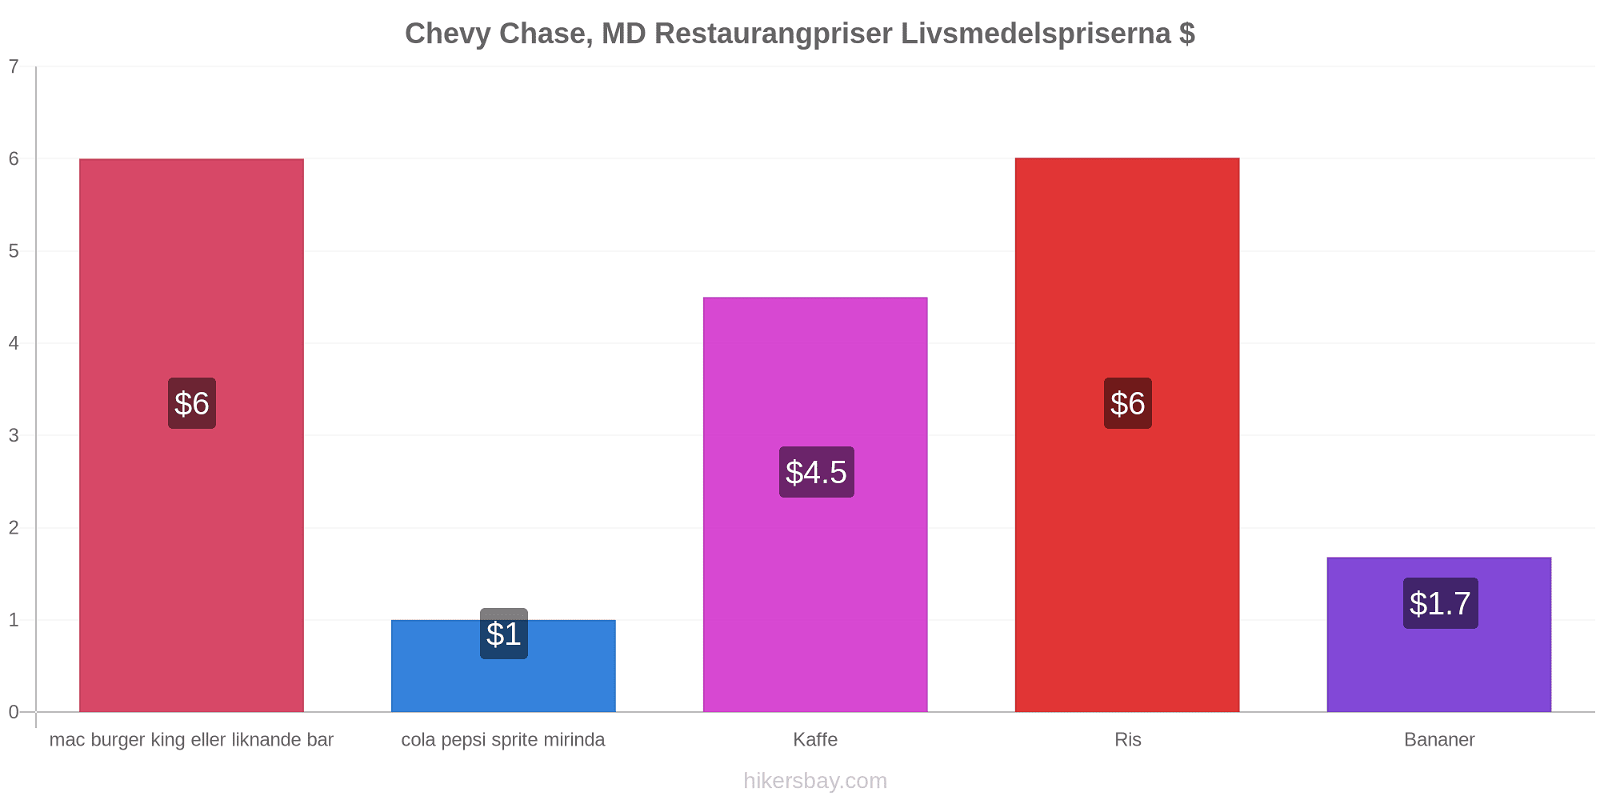 Chevy Chase, MD prisändringar hikersbay.com